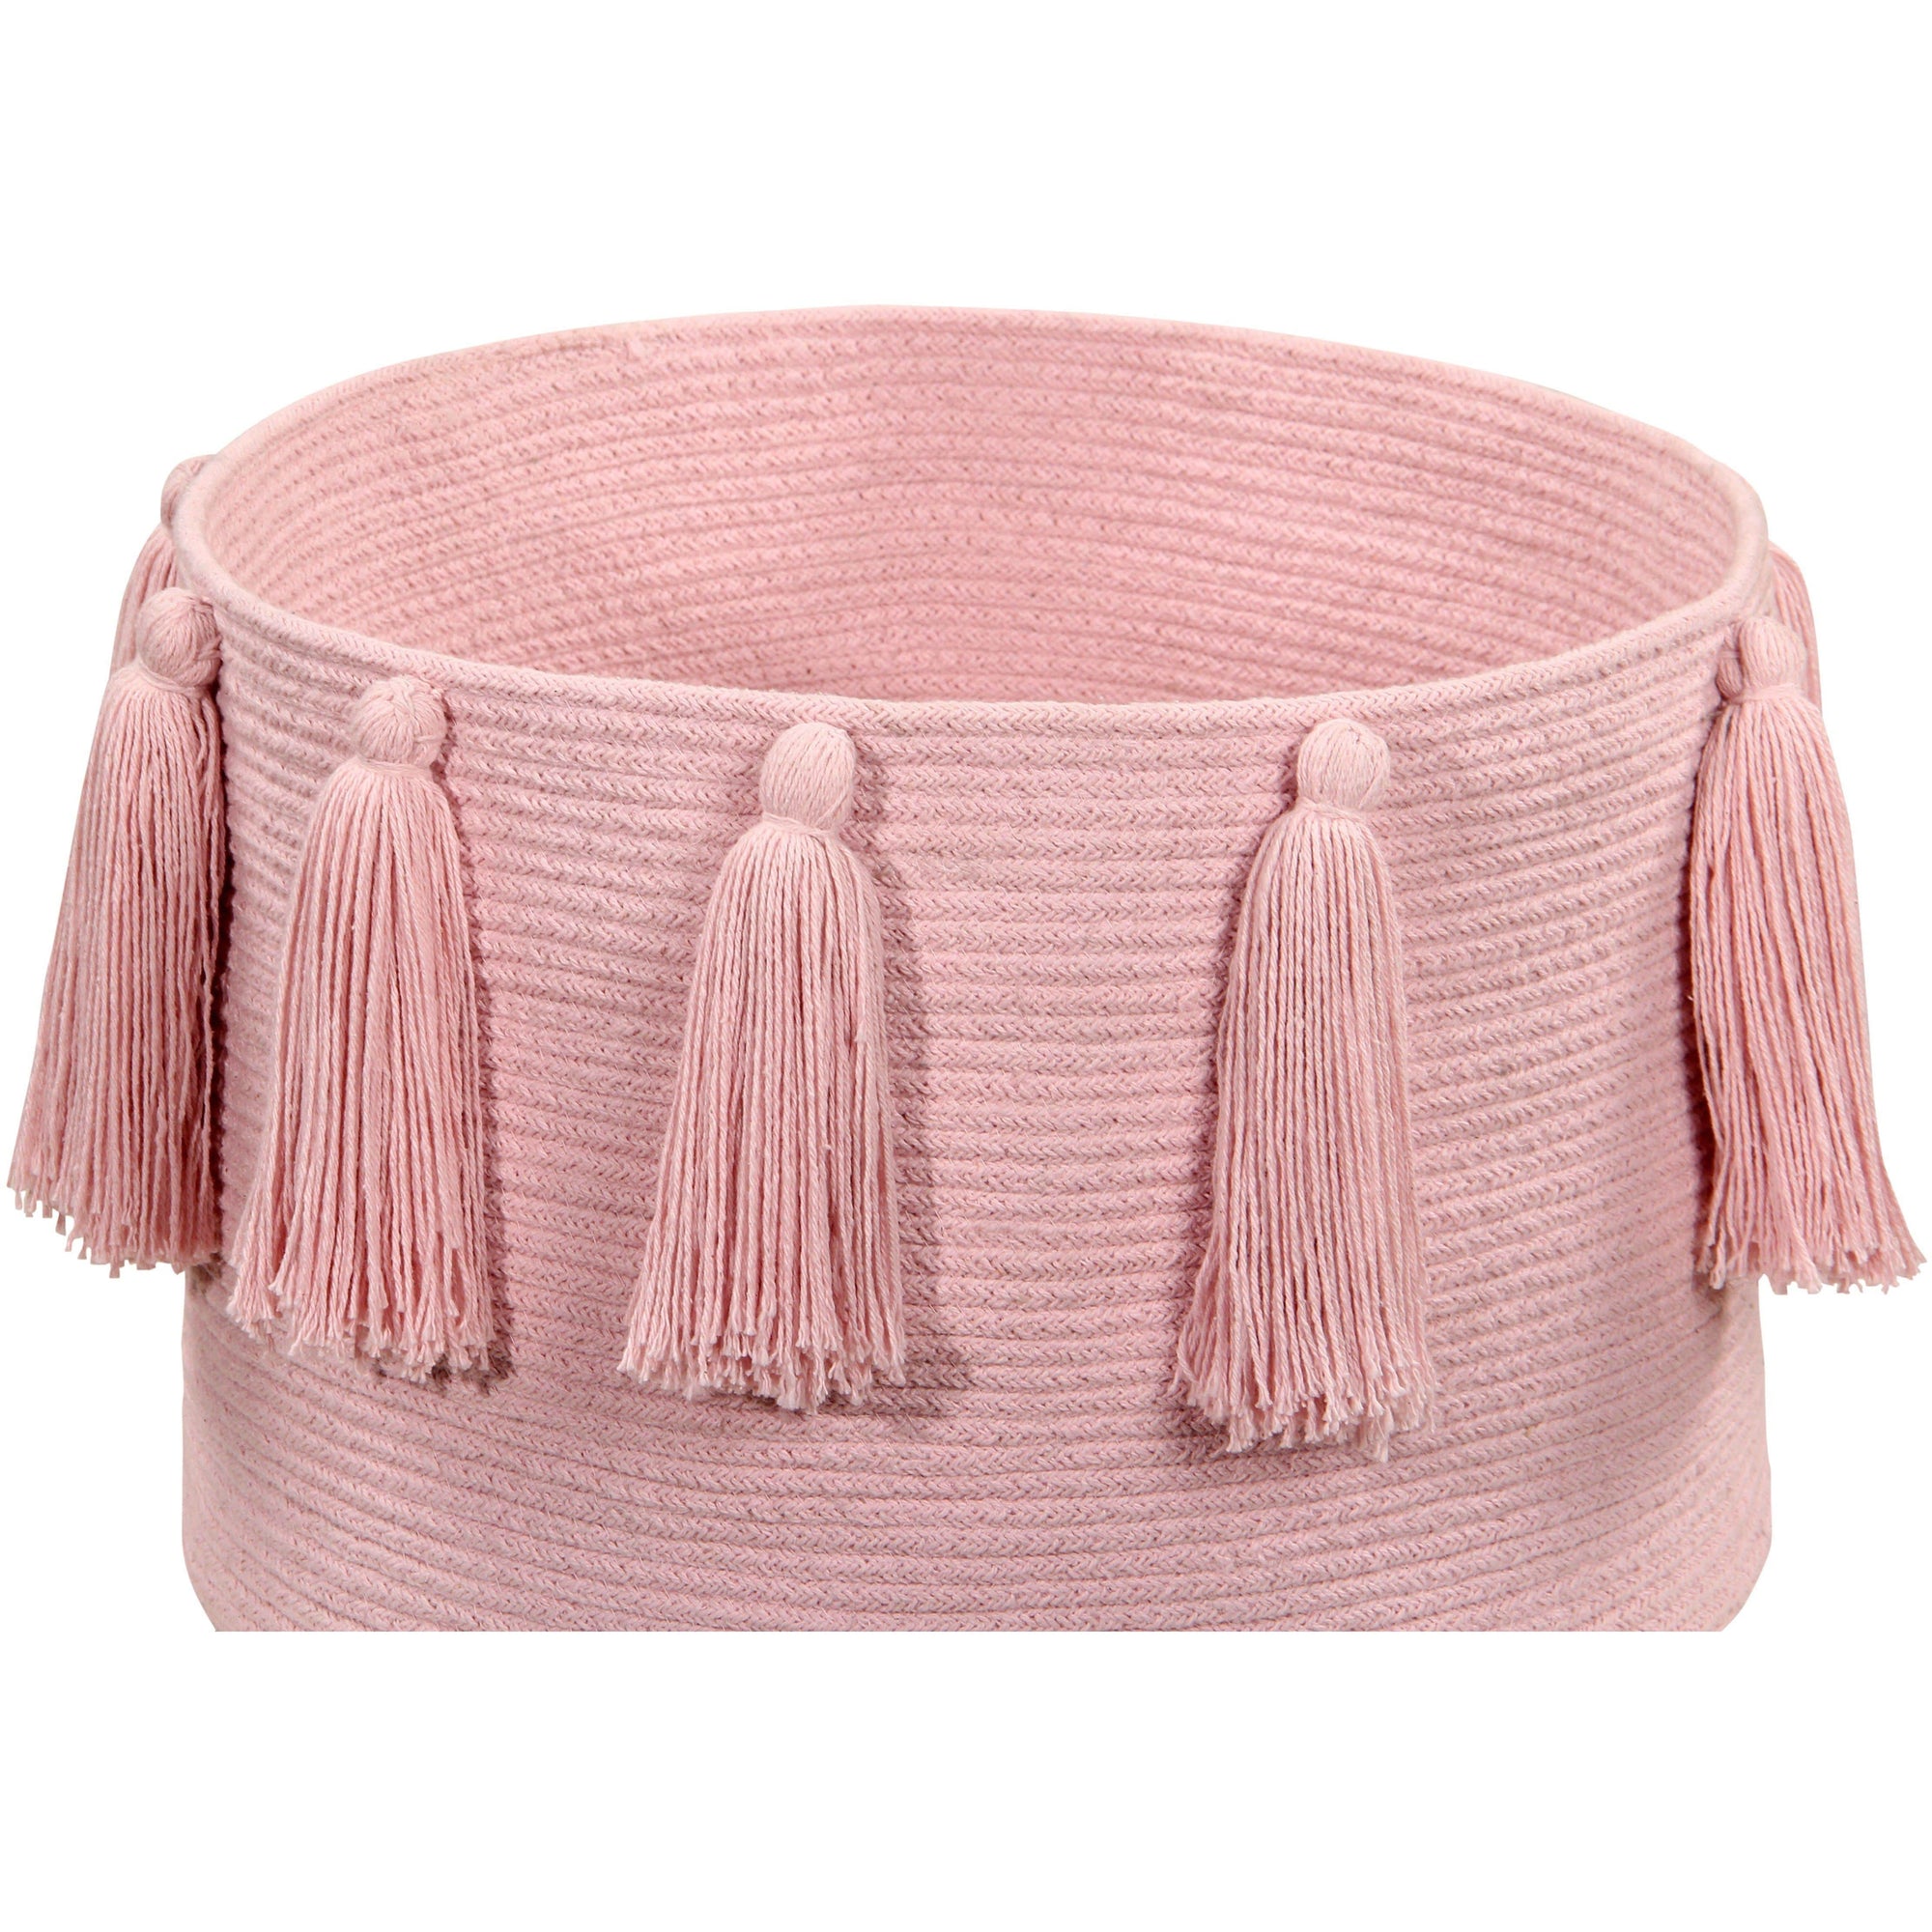 Rugs by Roo | Lorena Canals Tassels Pink Basket-BSK-TAS-PK